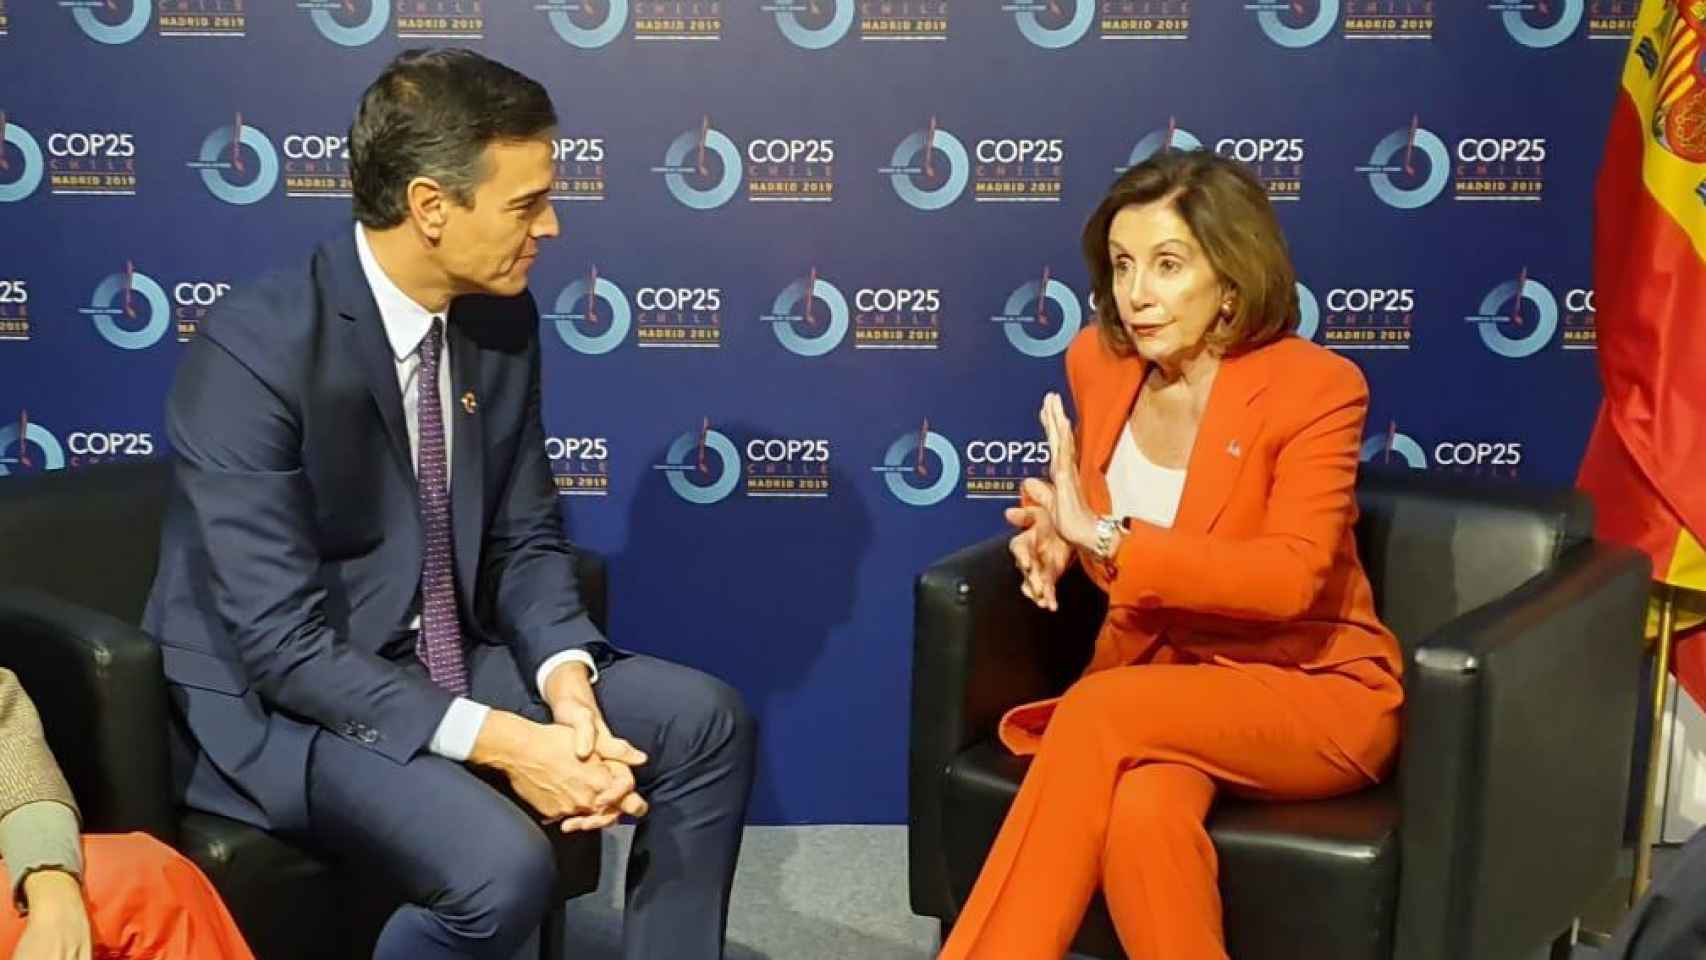 Pedro Sánchez conversa con Nancy Pelosi en Ifema, donde se celebra la Cumbre del Clima.